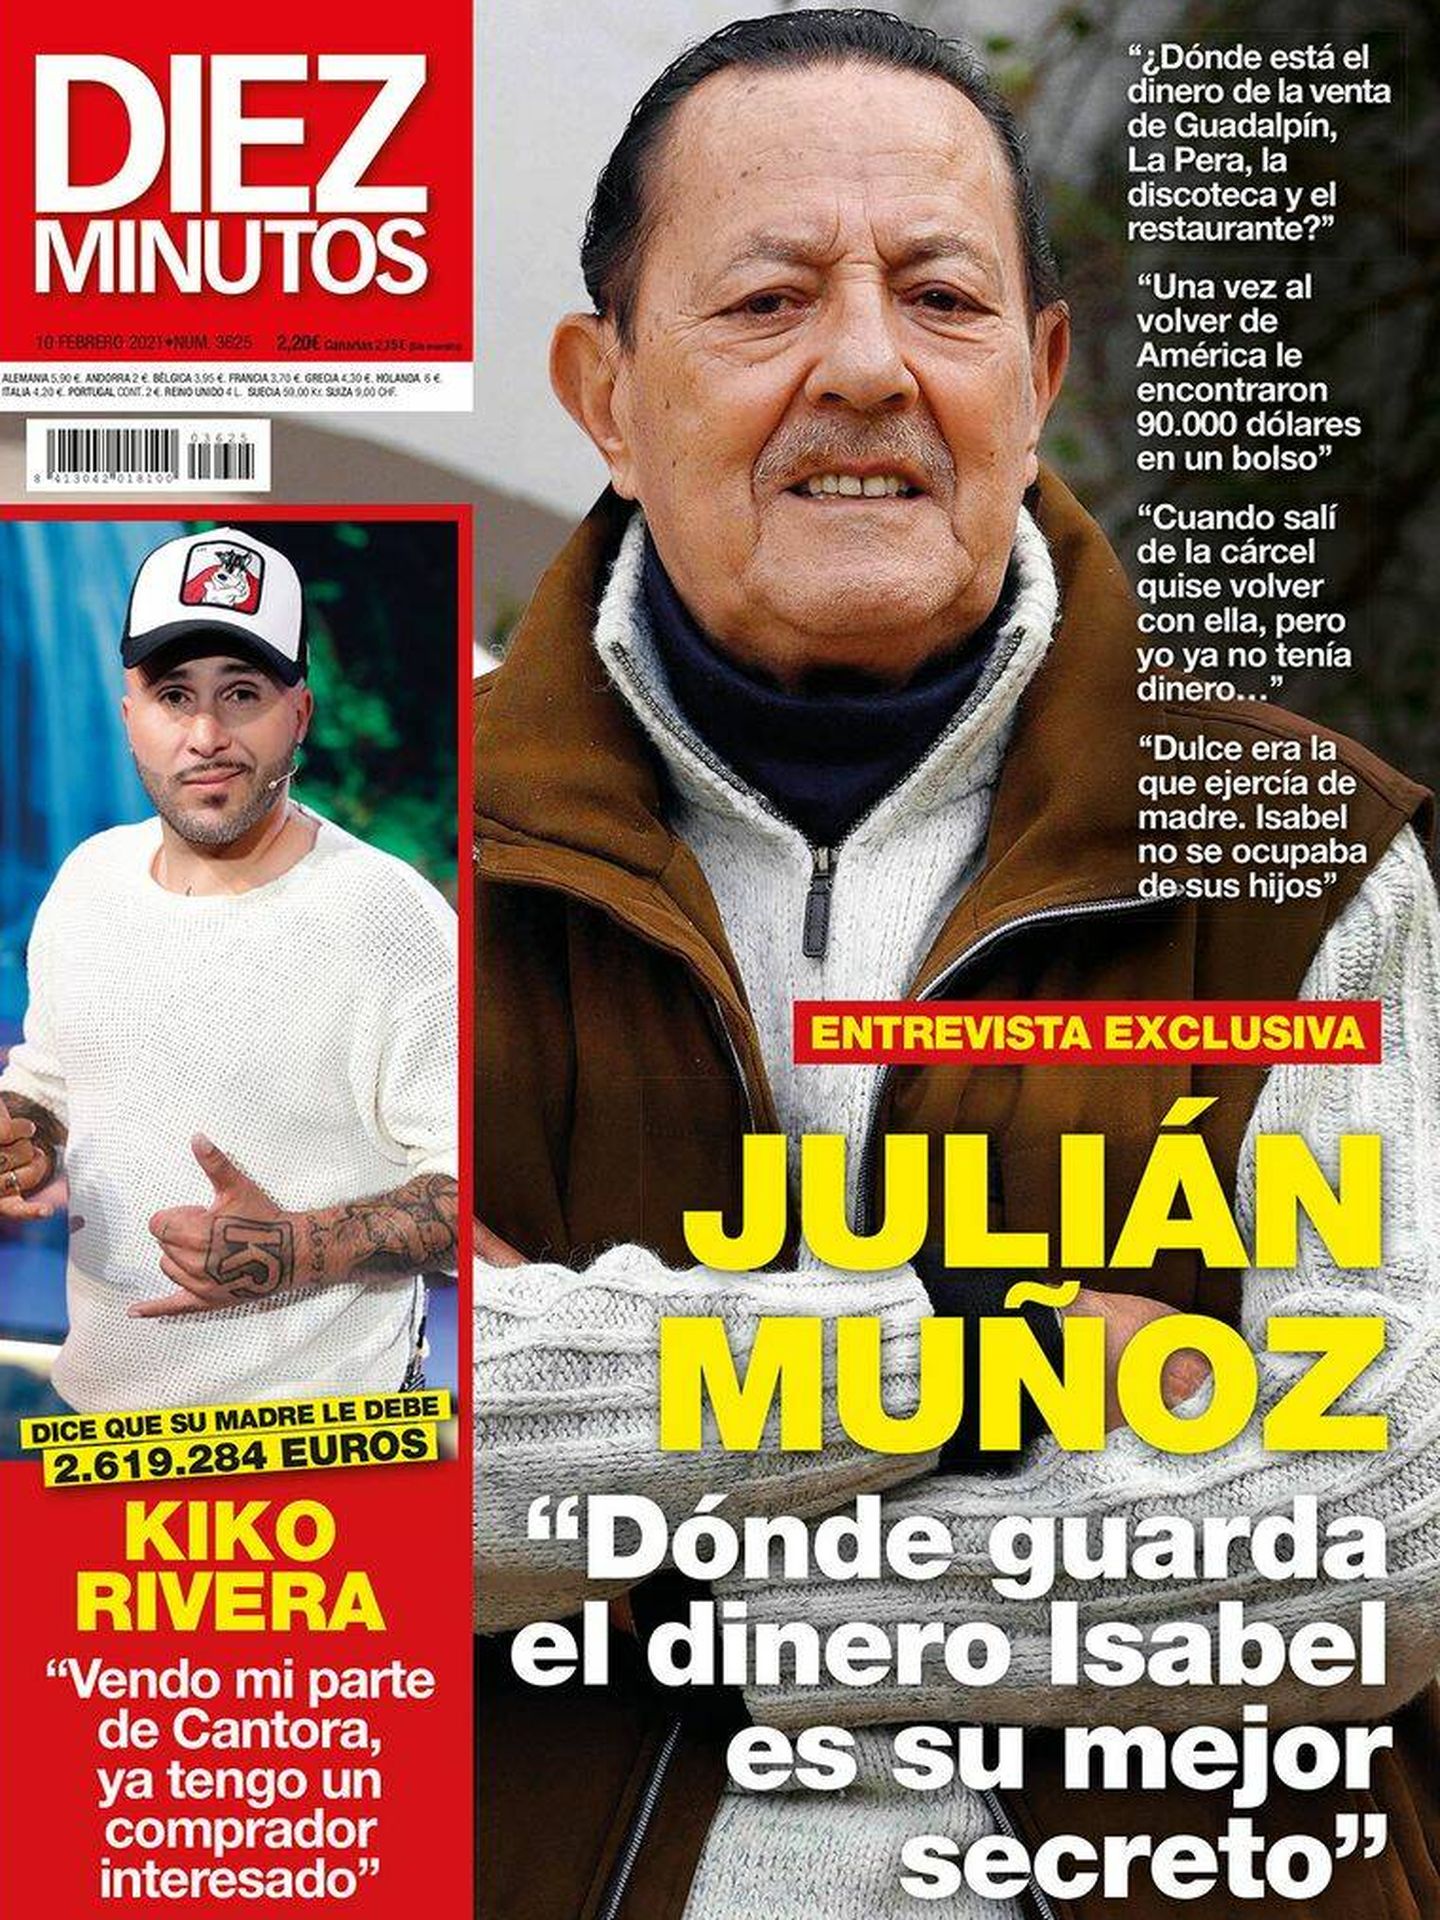 Portada de 'Diez Minutos' de febrero de 2021 en la que Julián Muñoz arremete contra Isabel Pantoja.